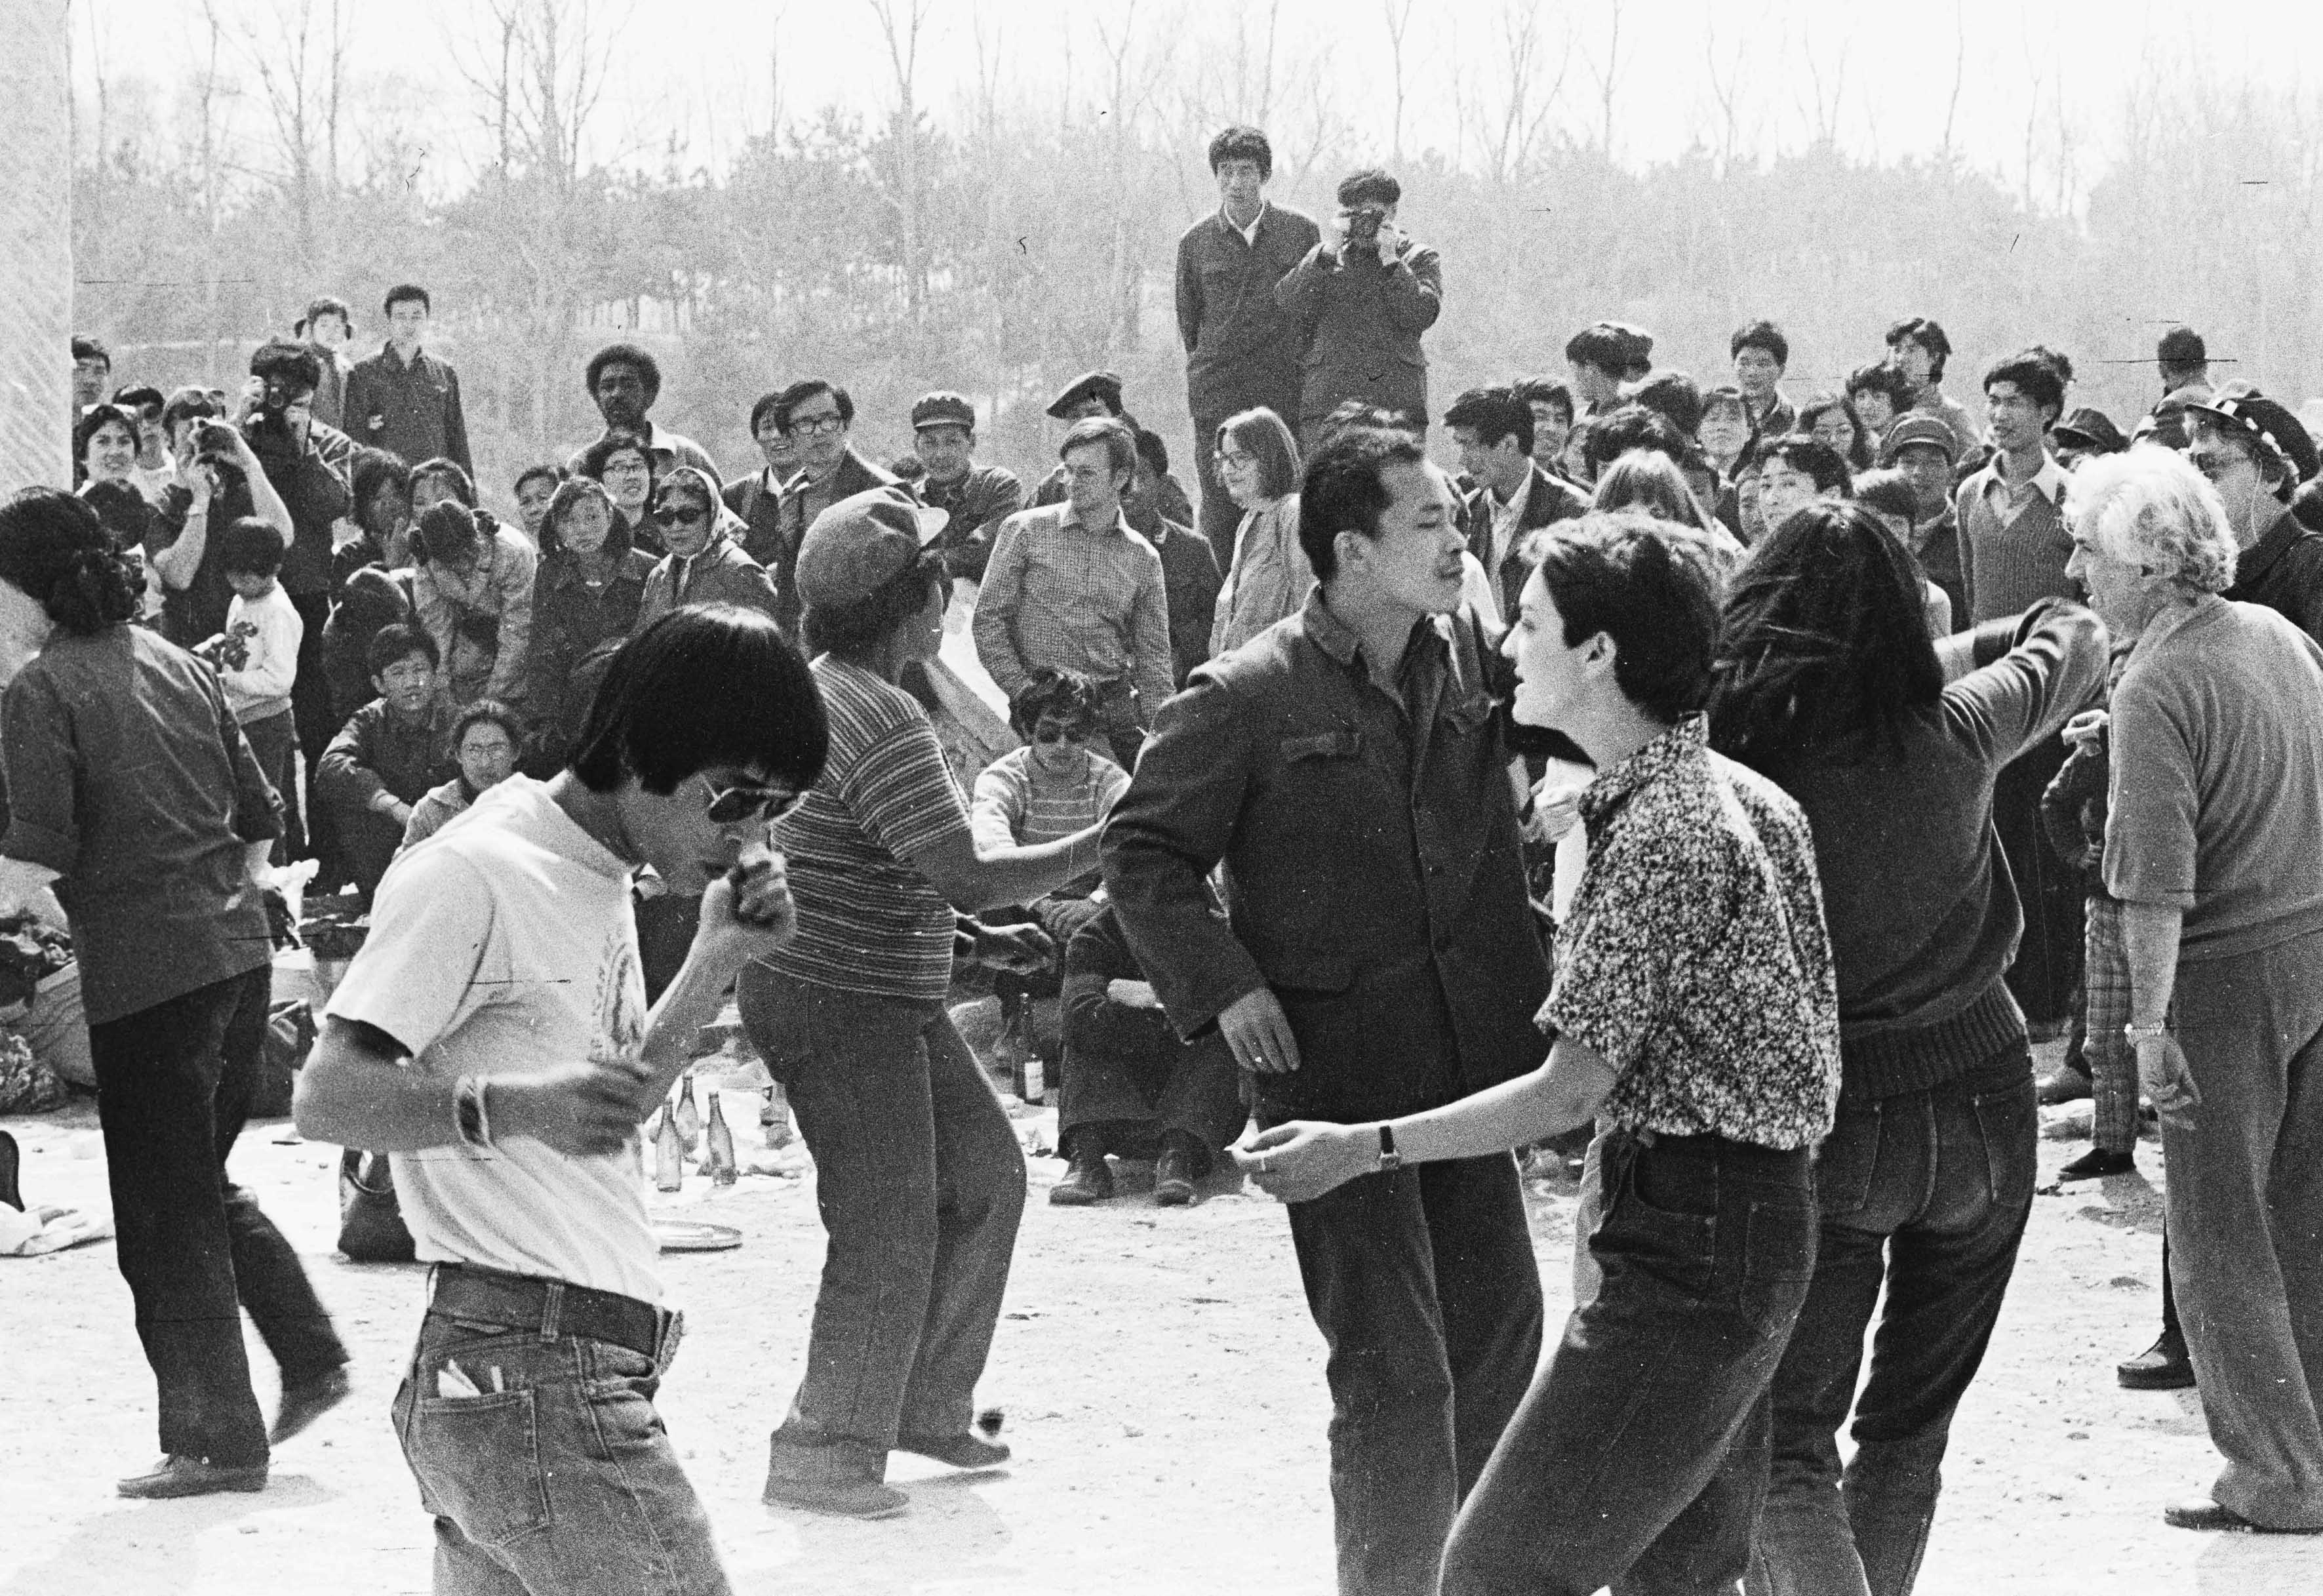 星星画会在圆明园举办的舞会,1980,摄影:李晓斌,星星艺术基金会惠允